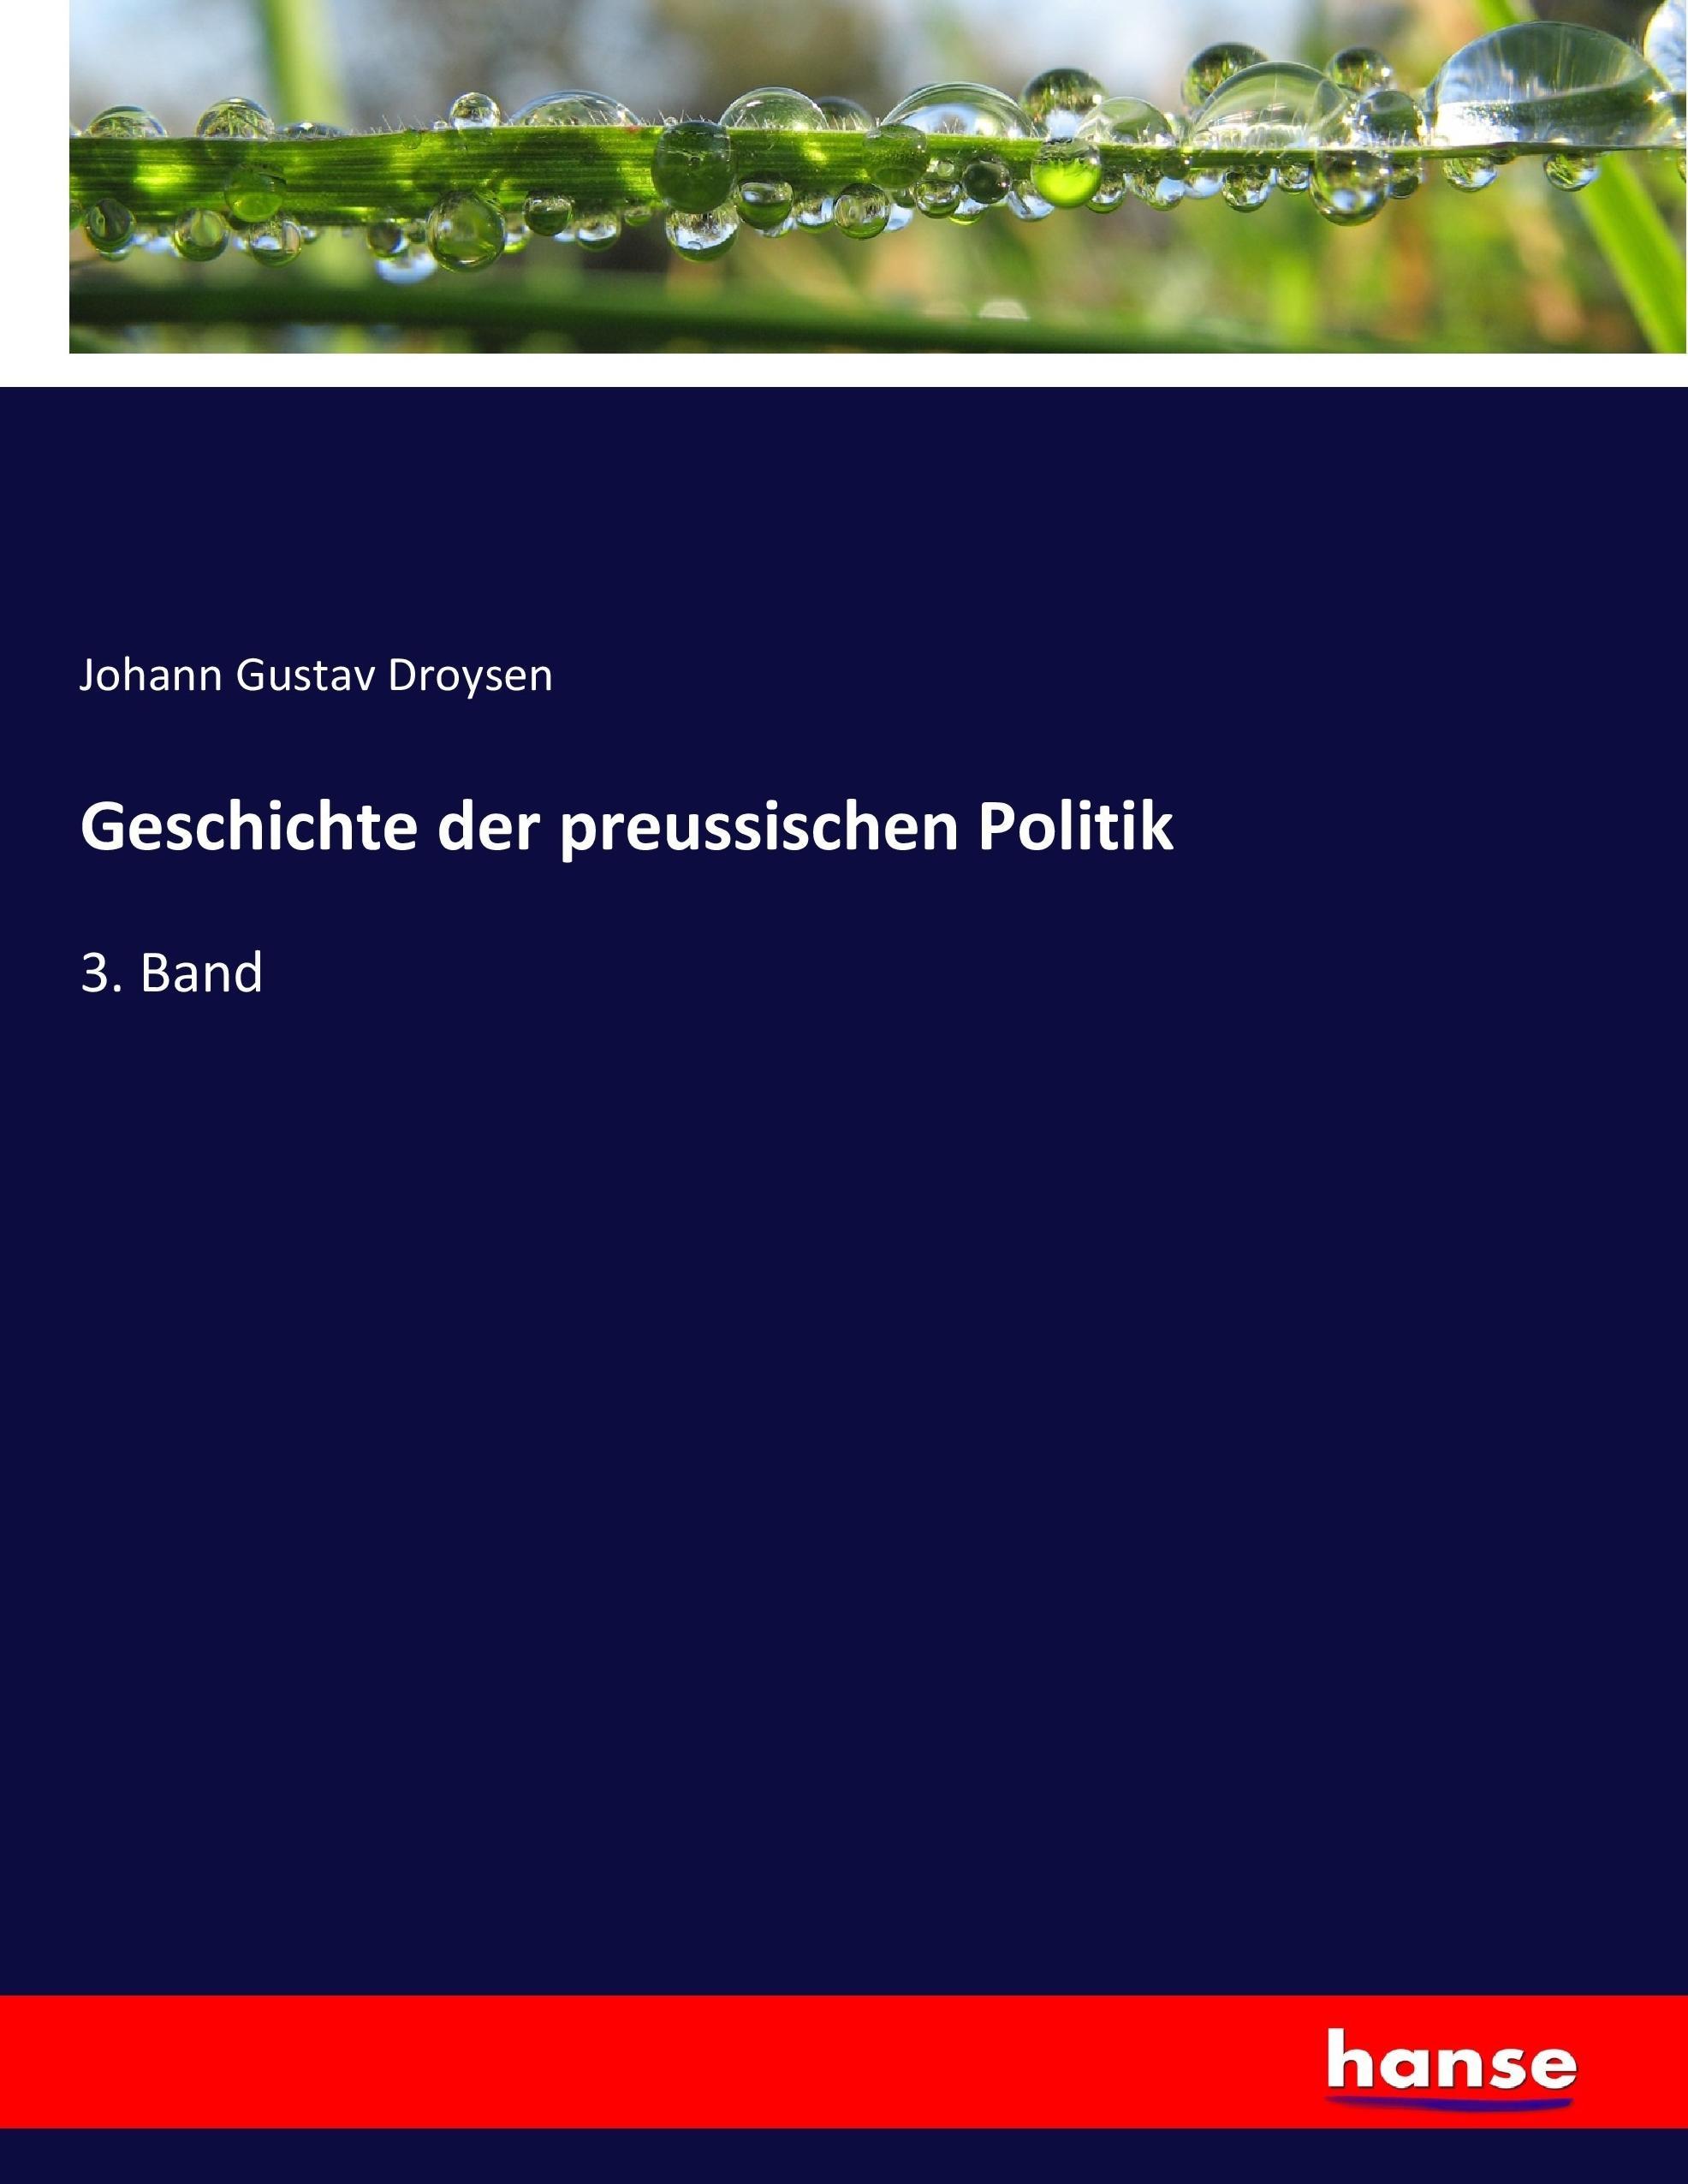 Geschichte der preussischen Politik | 3. Band | Johann Gustav Droysen | Taschenbuch | Paperback | 652 S. | Deutsch | 2017 | hansebooks | EAN 9783743686267 - Droysen, Johann Gustav